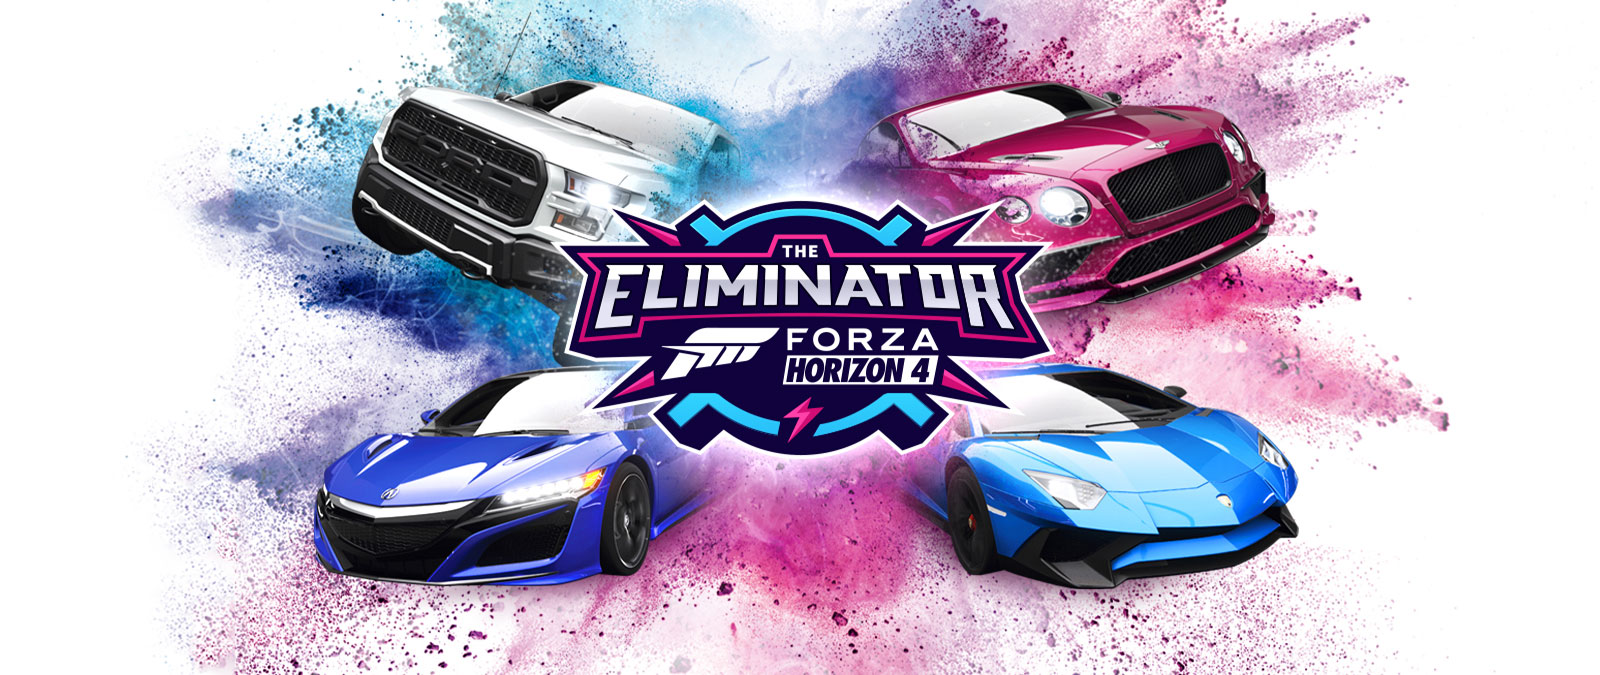 The Eliminator, logótipo de Forza Horizon 4, quatro carros com pó azul e rosa em seu redor